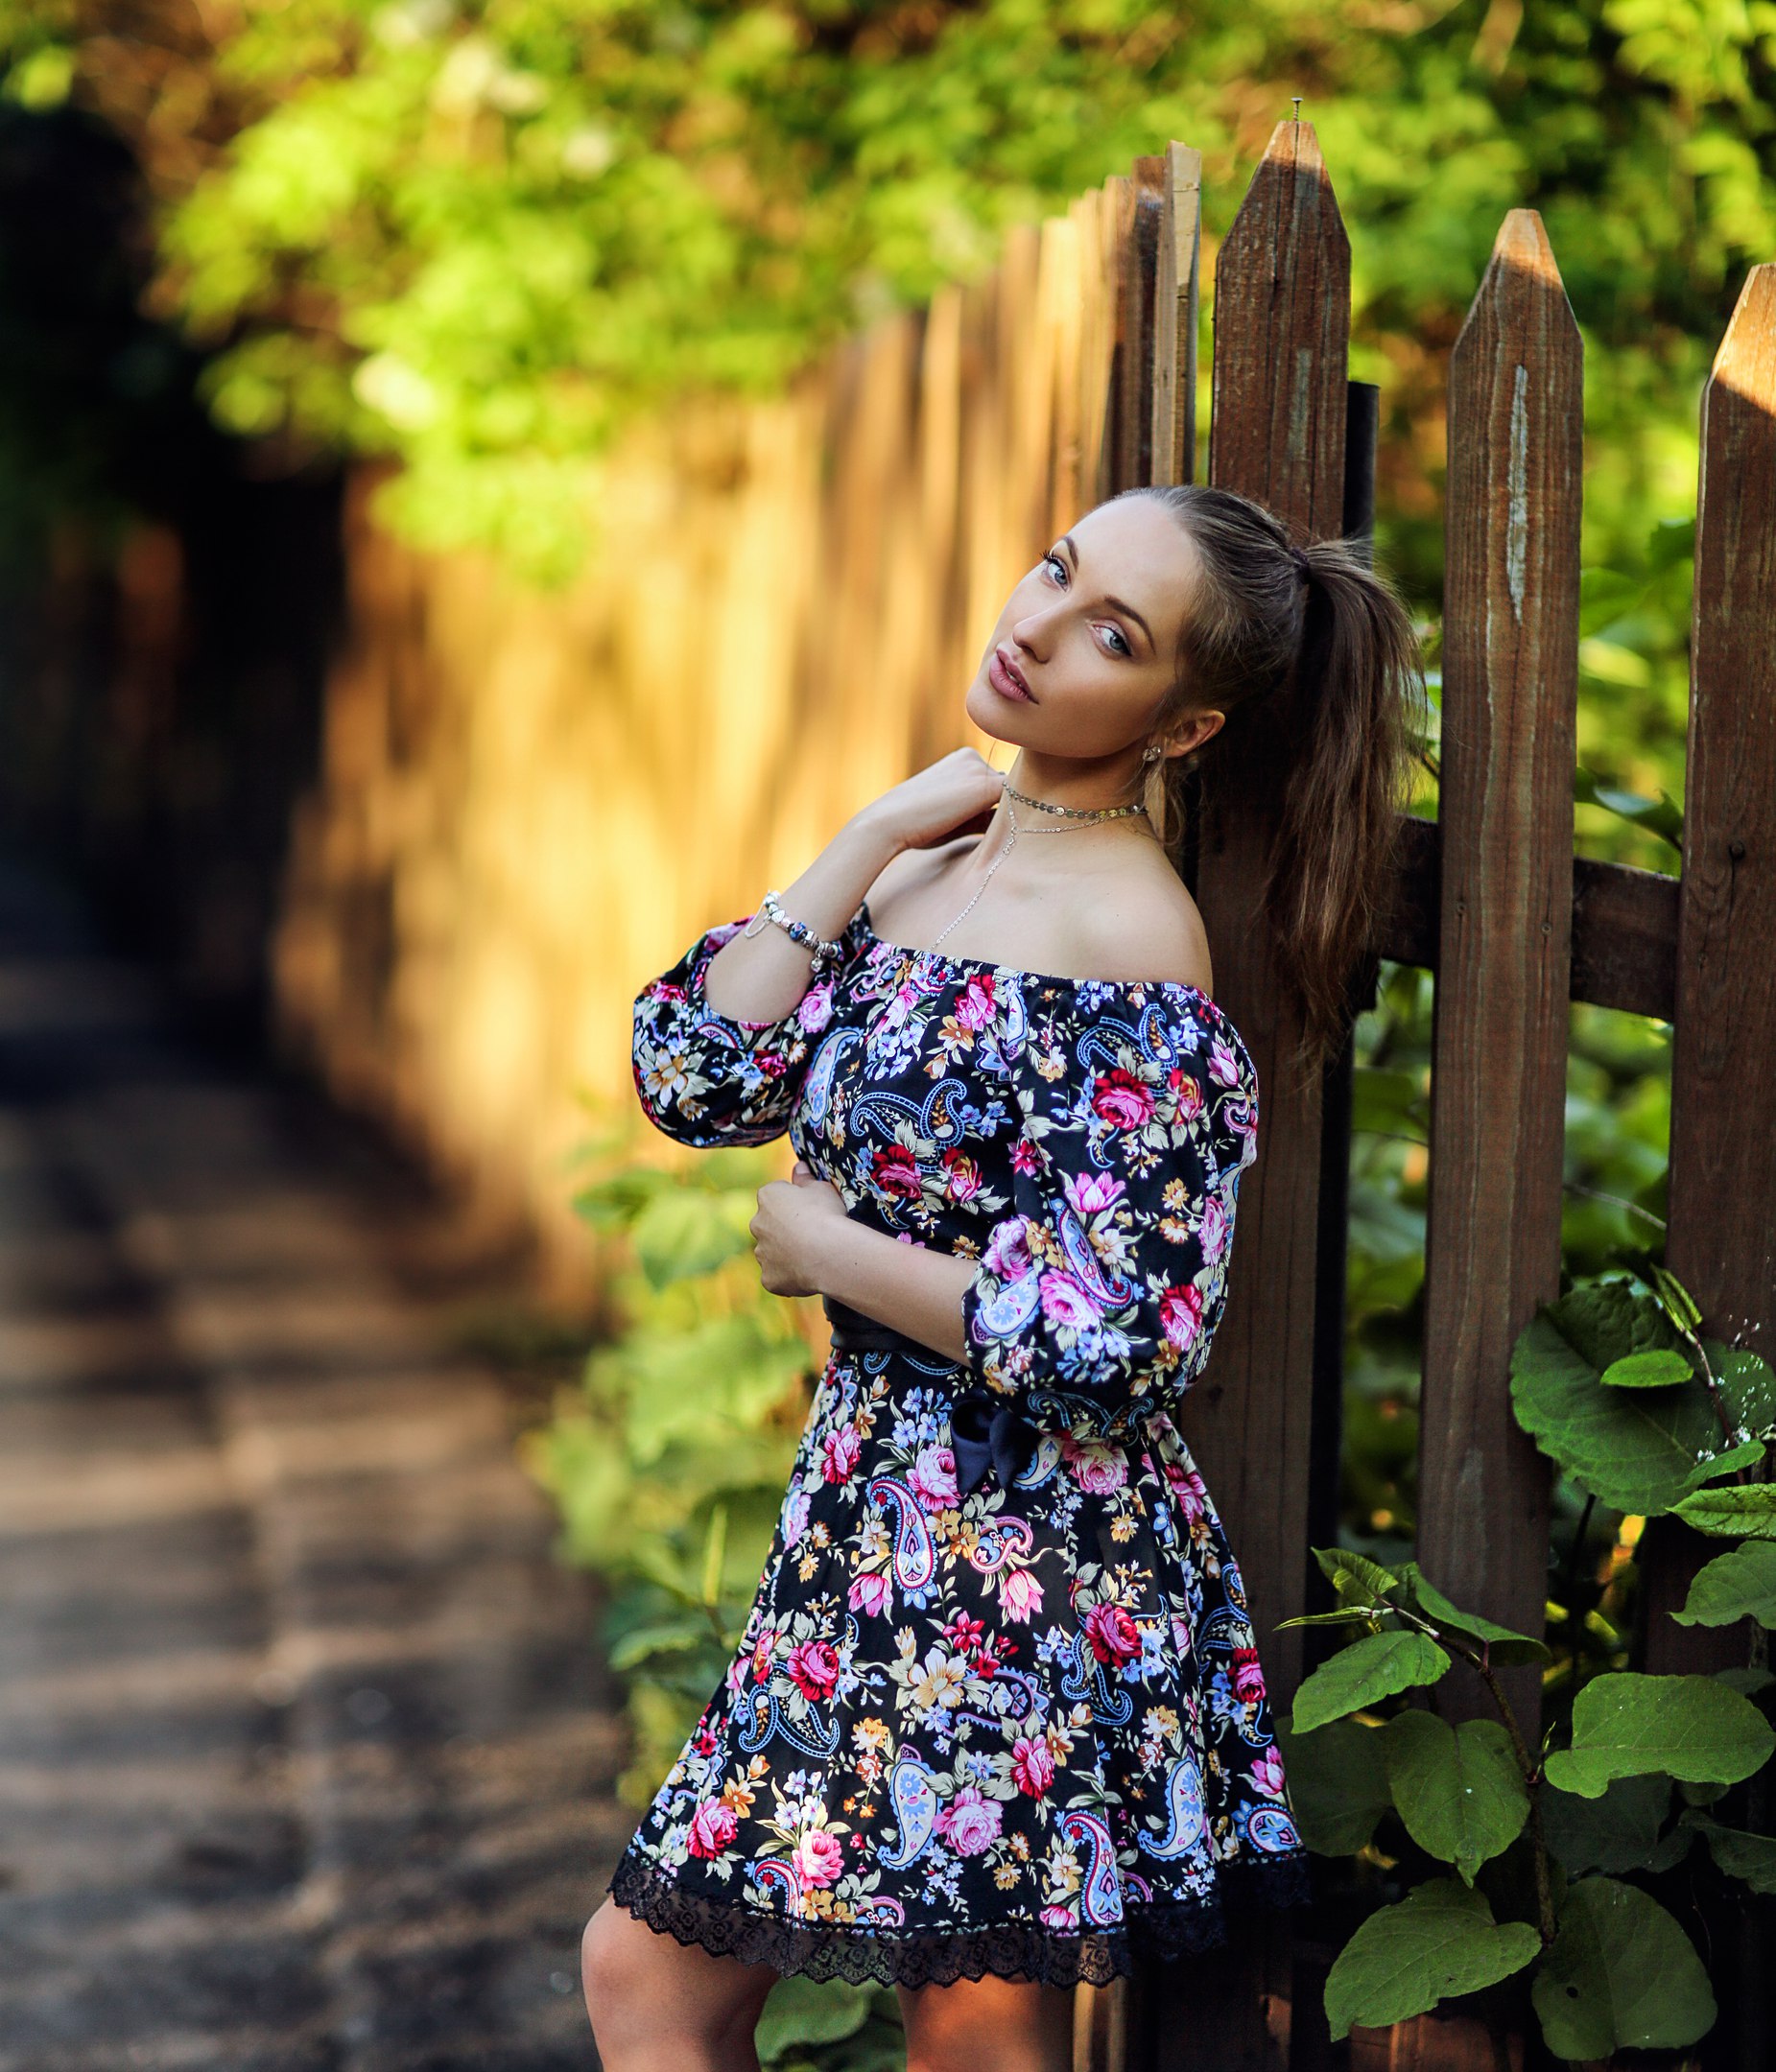 Hakan Erenler Women Model Women Outdoors Ponytail Dress Standing Flower Dress 1851x2160